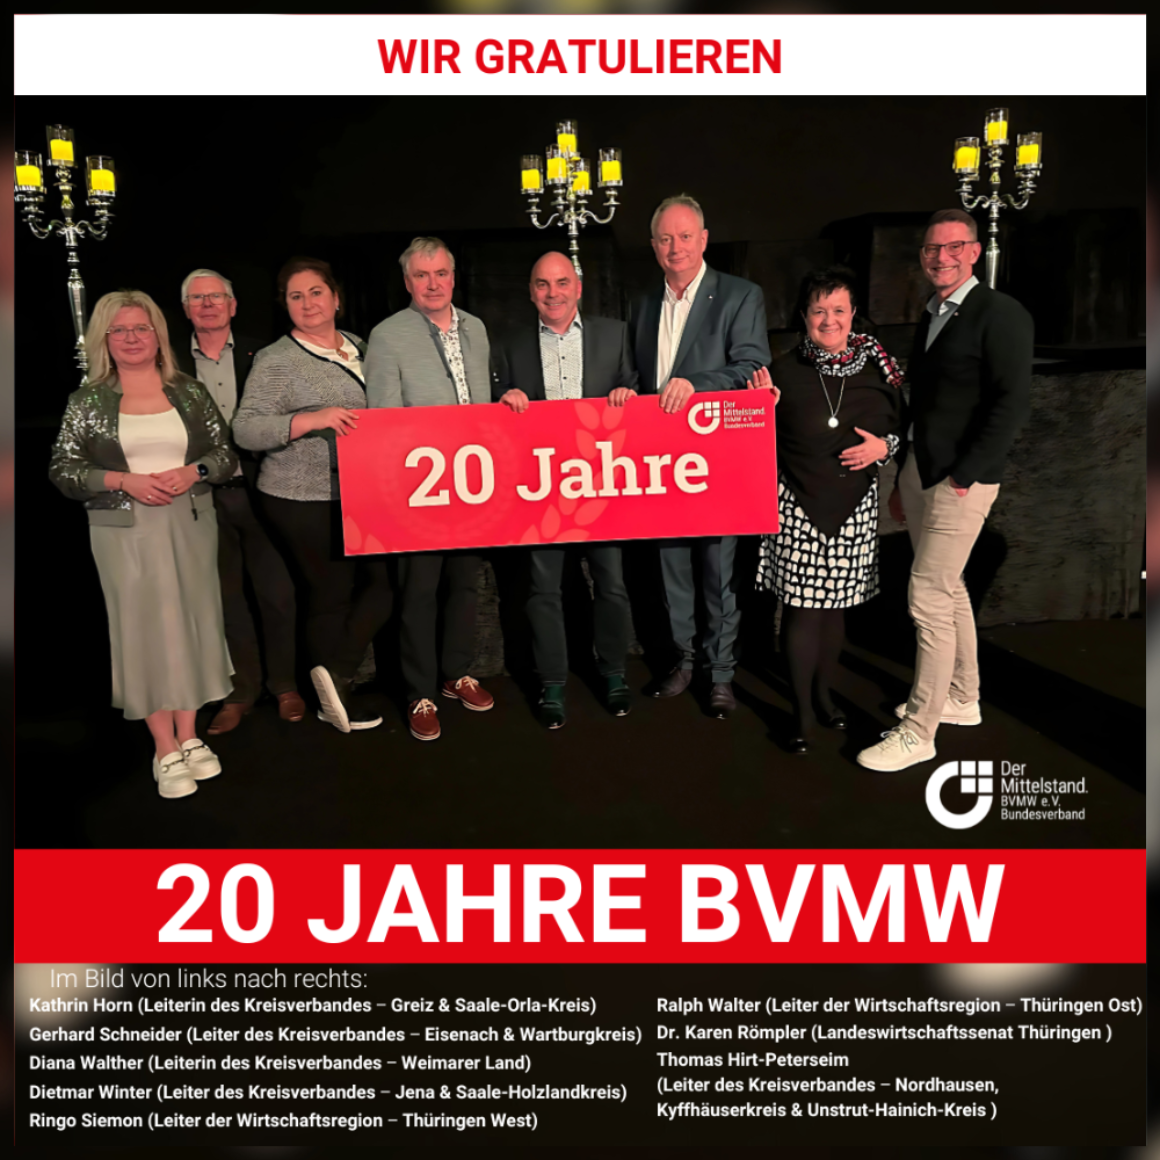 20 Jahre BVMW - Dietmar Winter Jubiläum